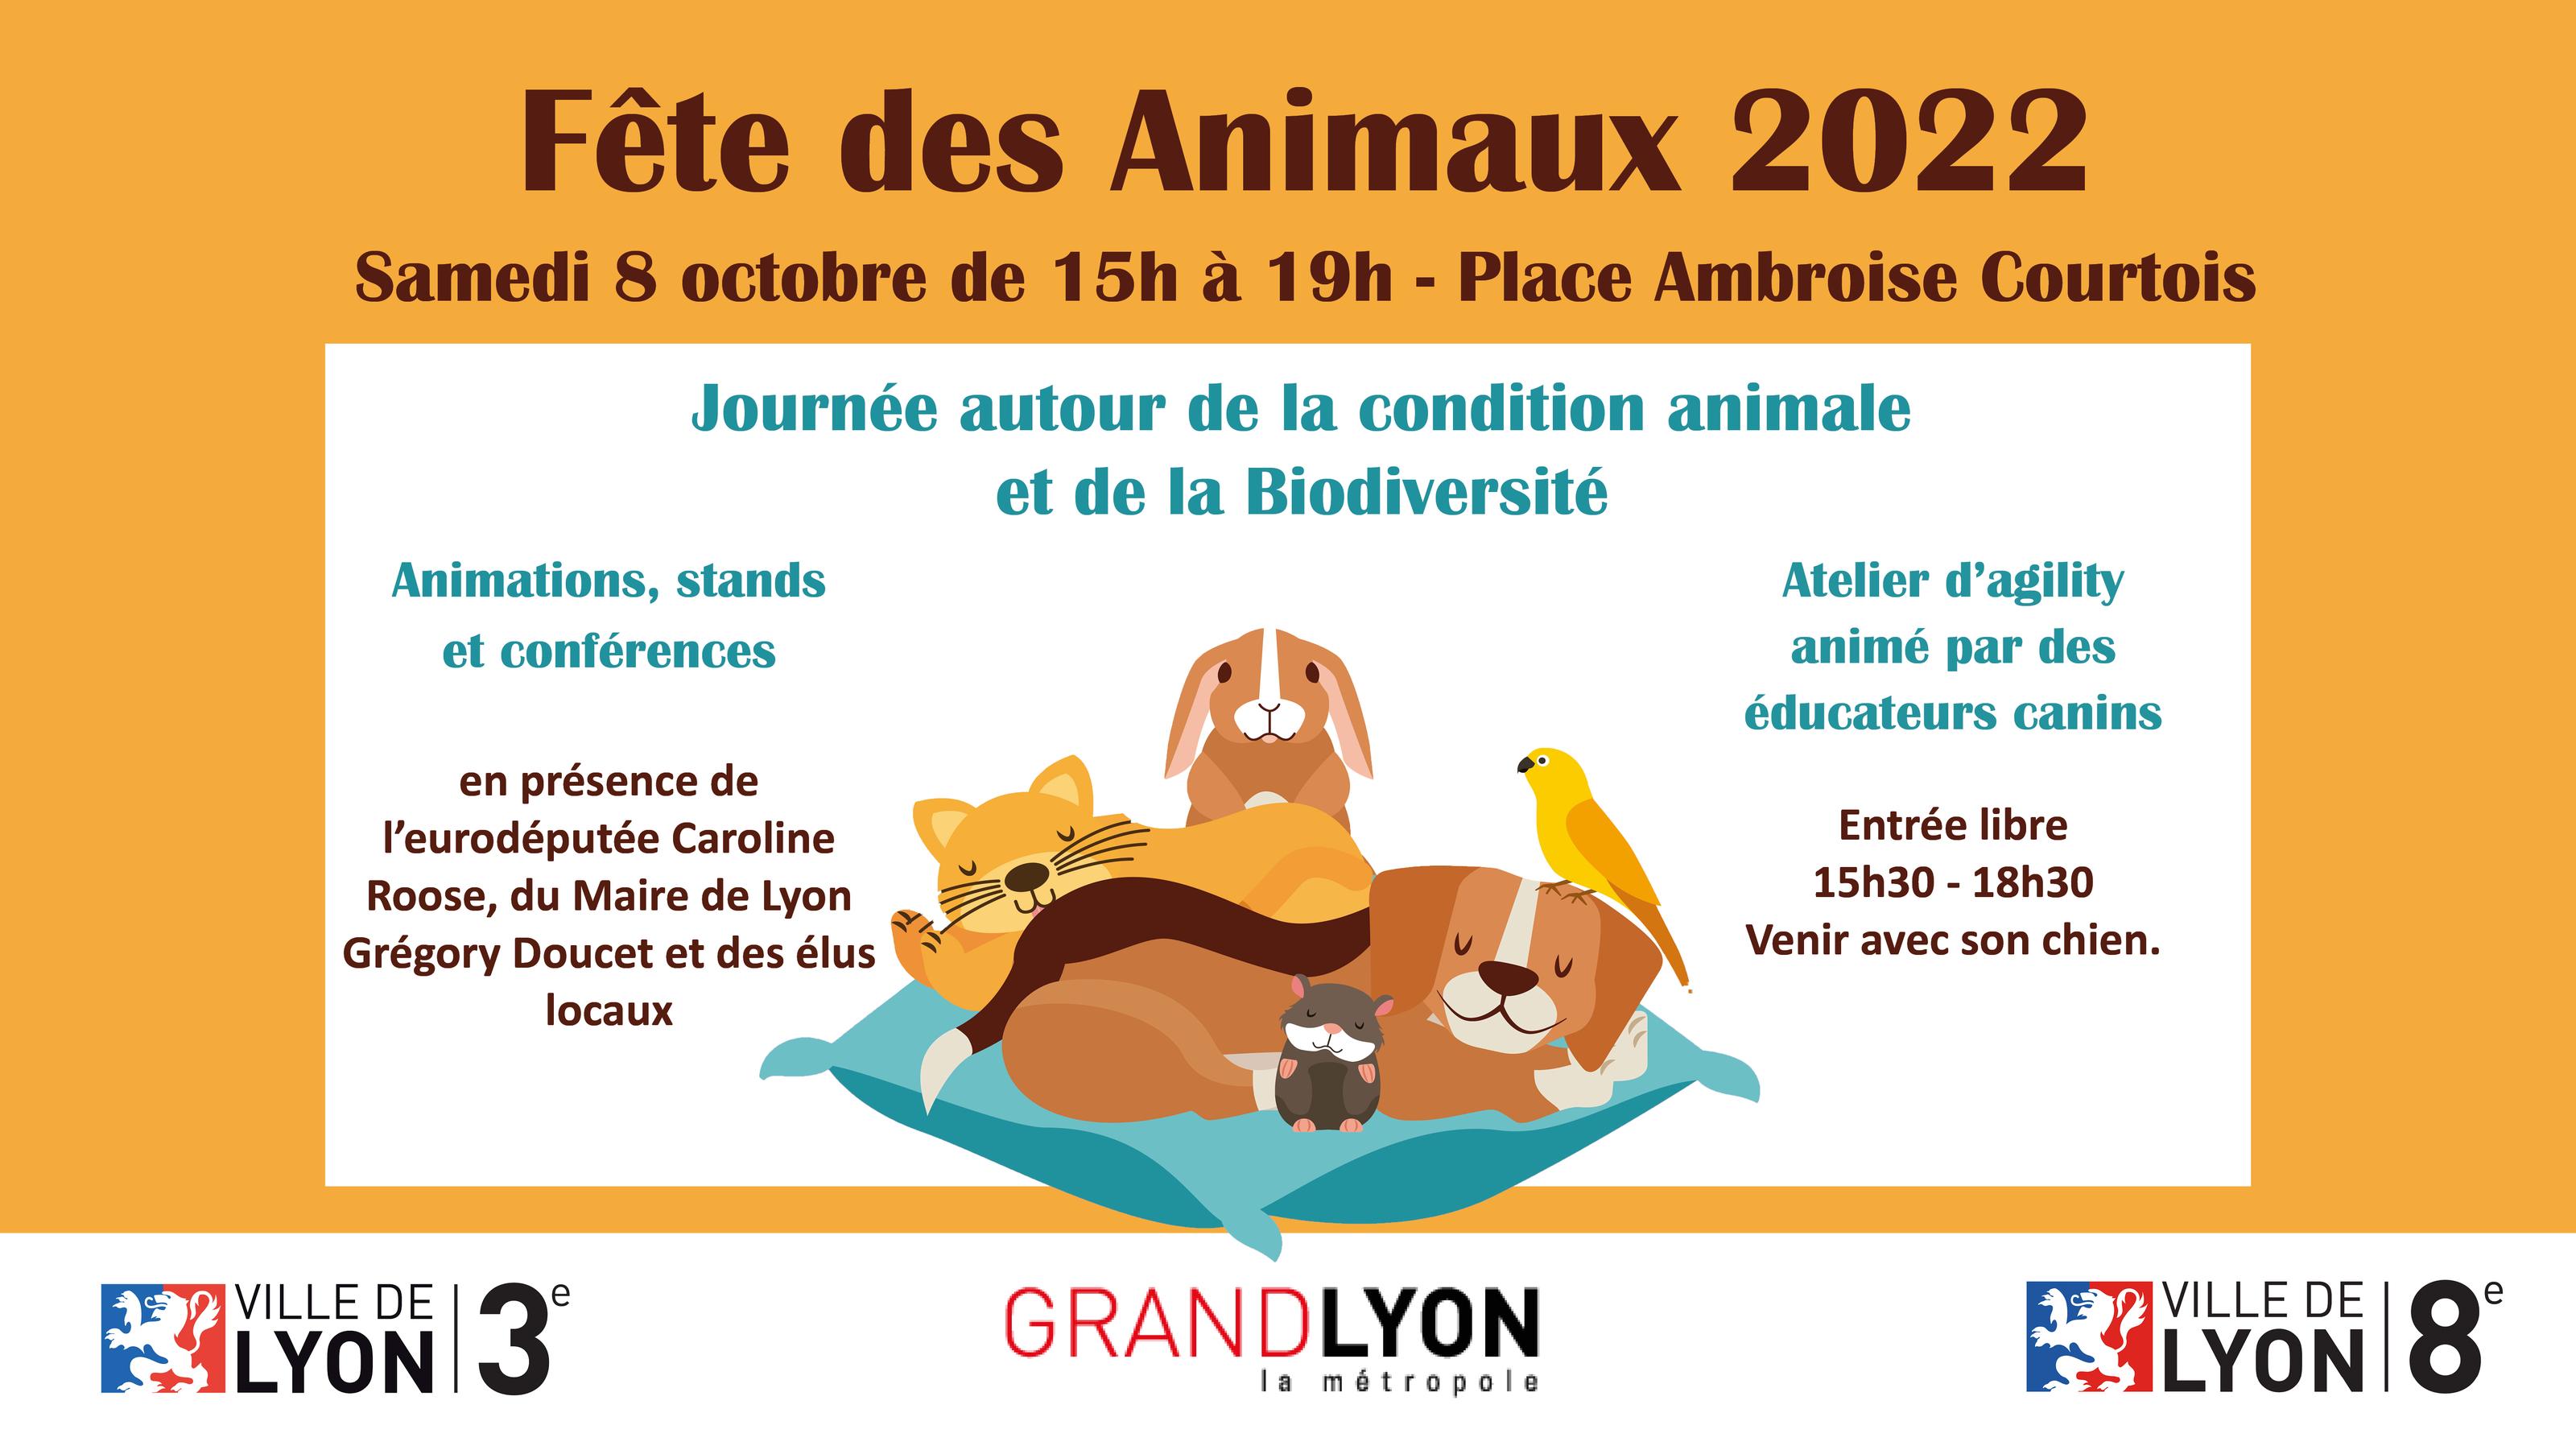 Fête des animaux : samedi 8/10 - place Ambroise Courtois